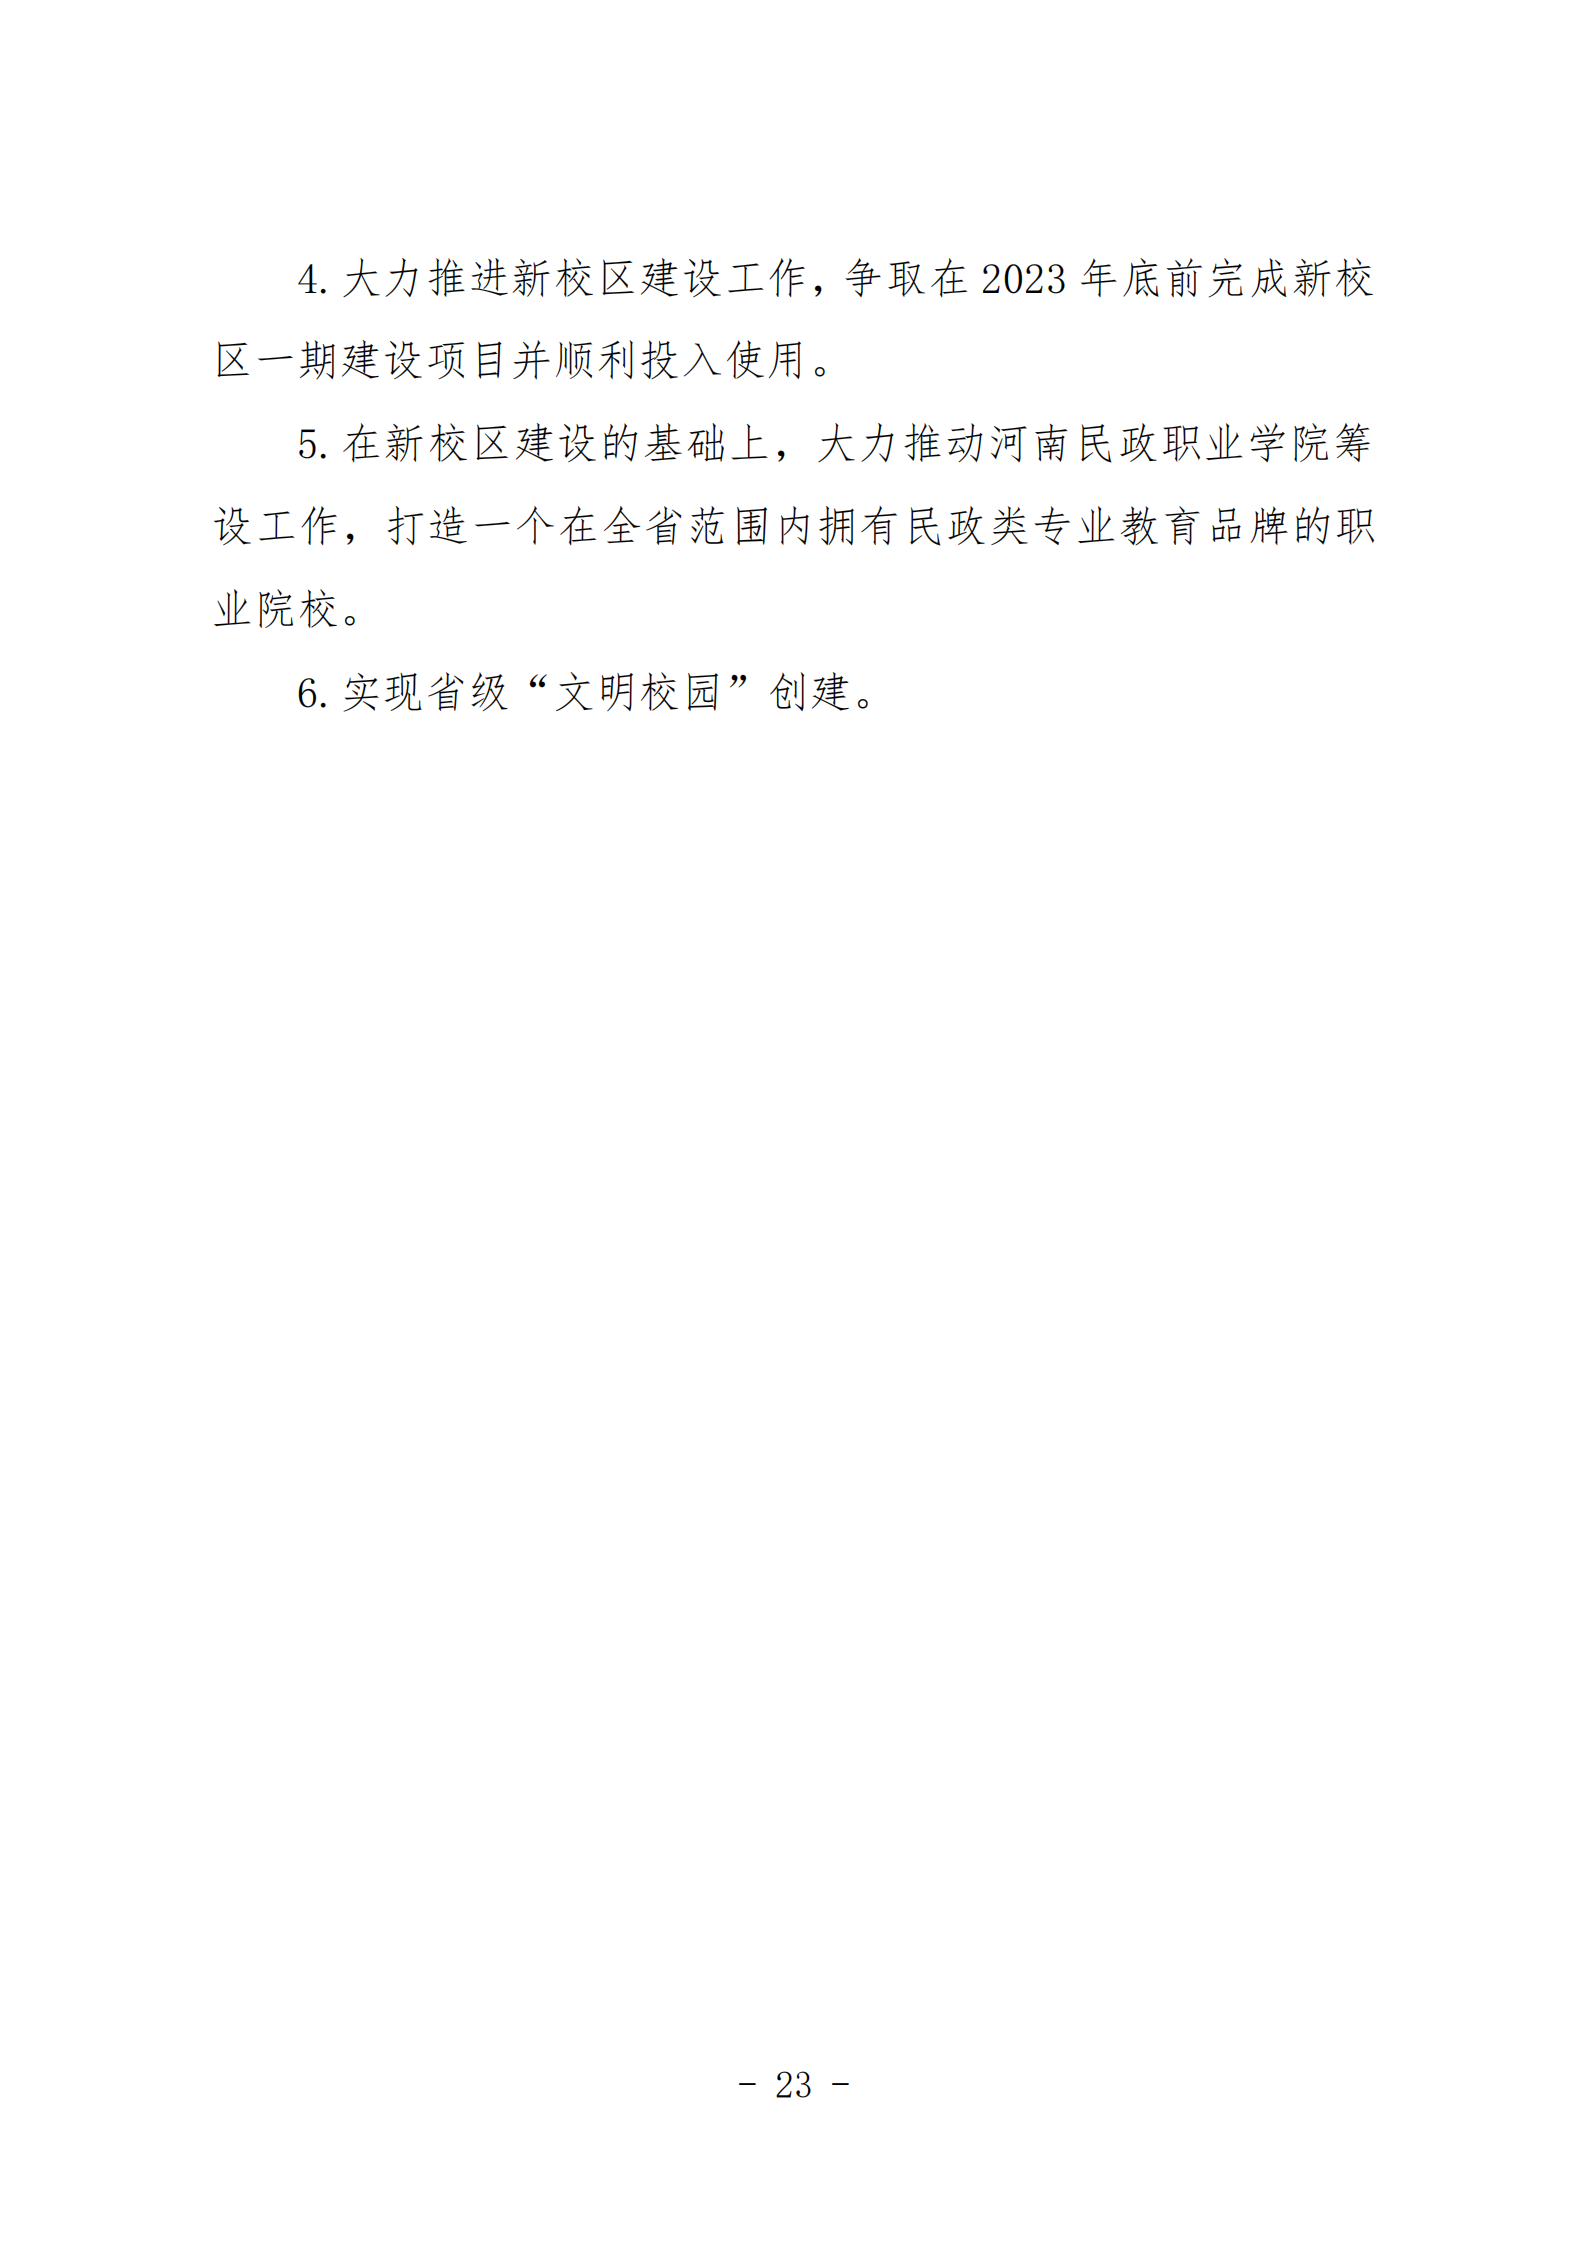 河南省民政学校职业教育质量年度报告（2023年）_02.png